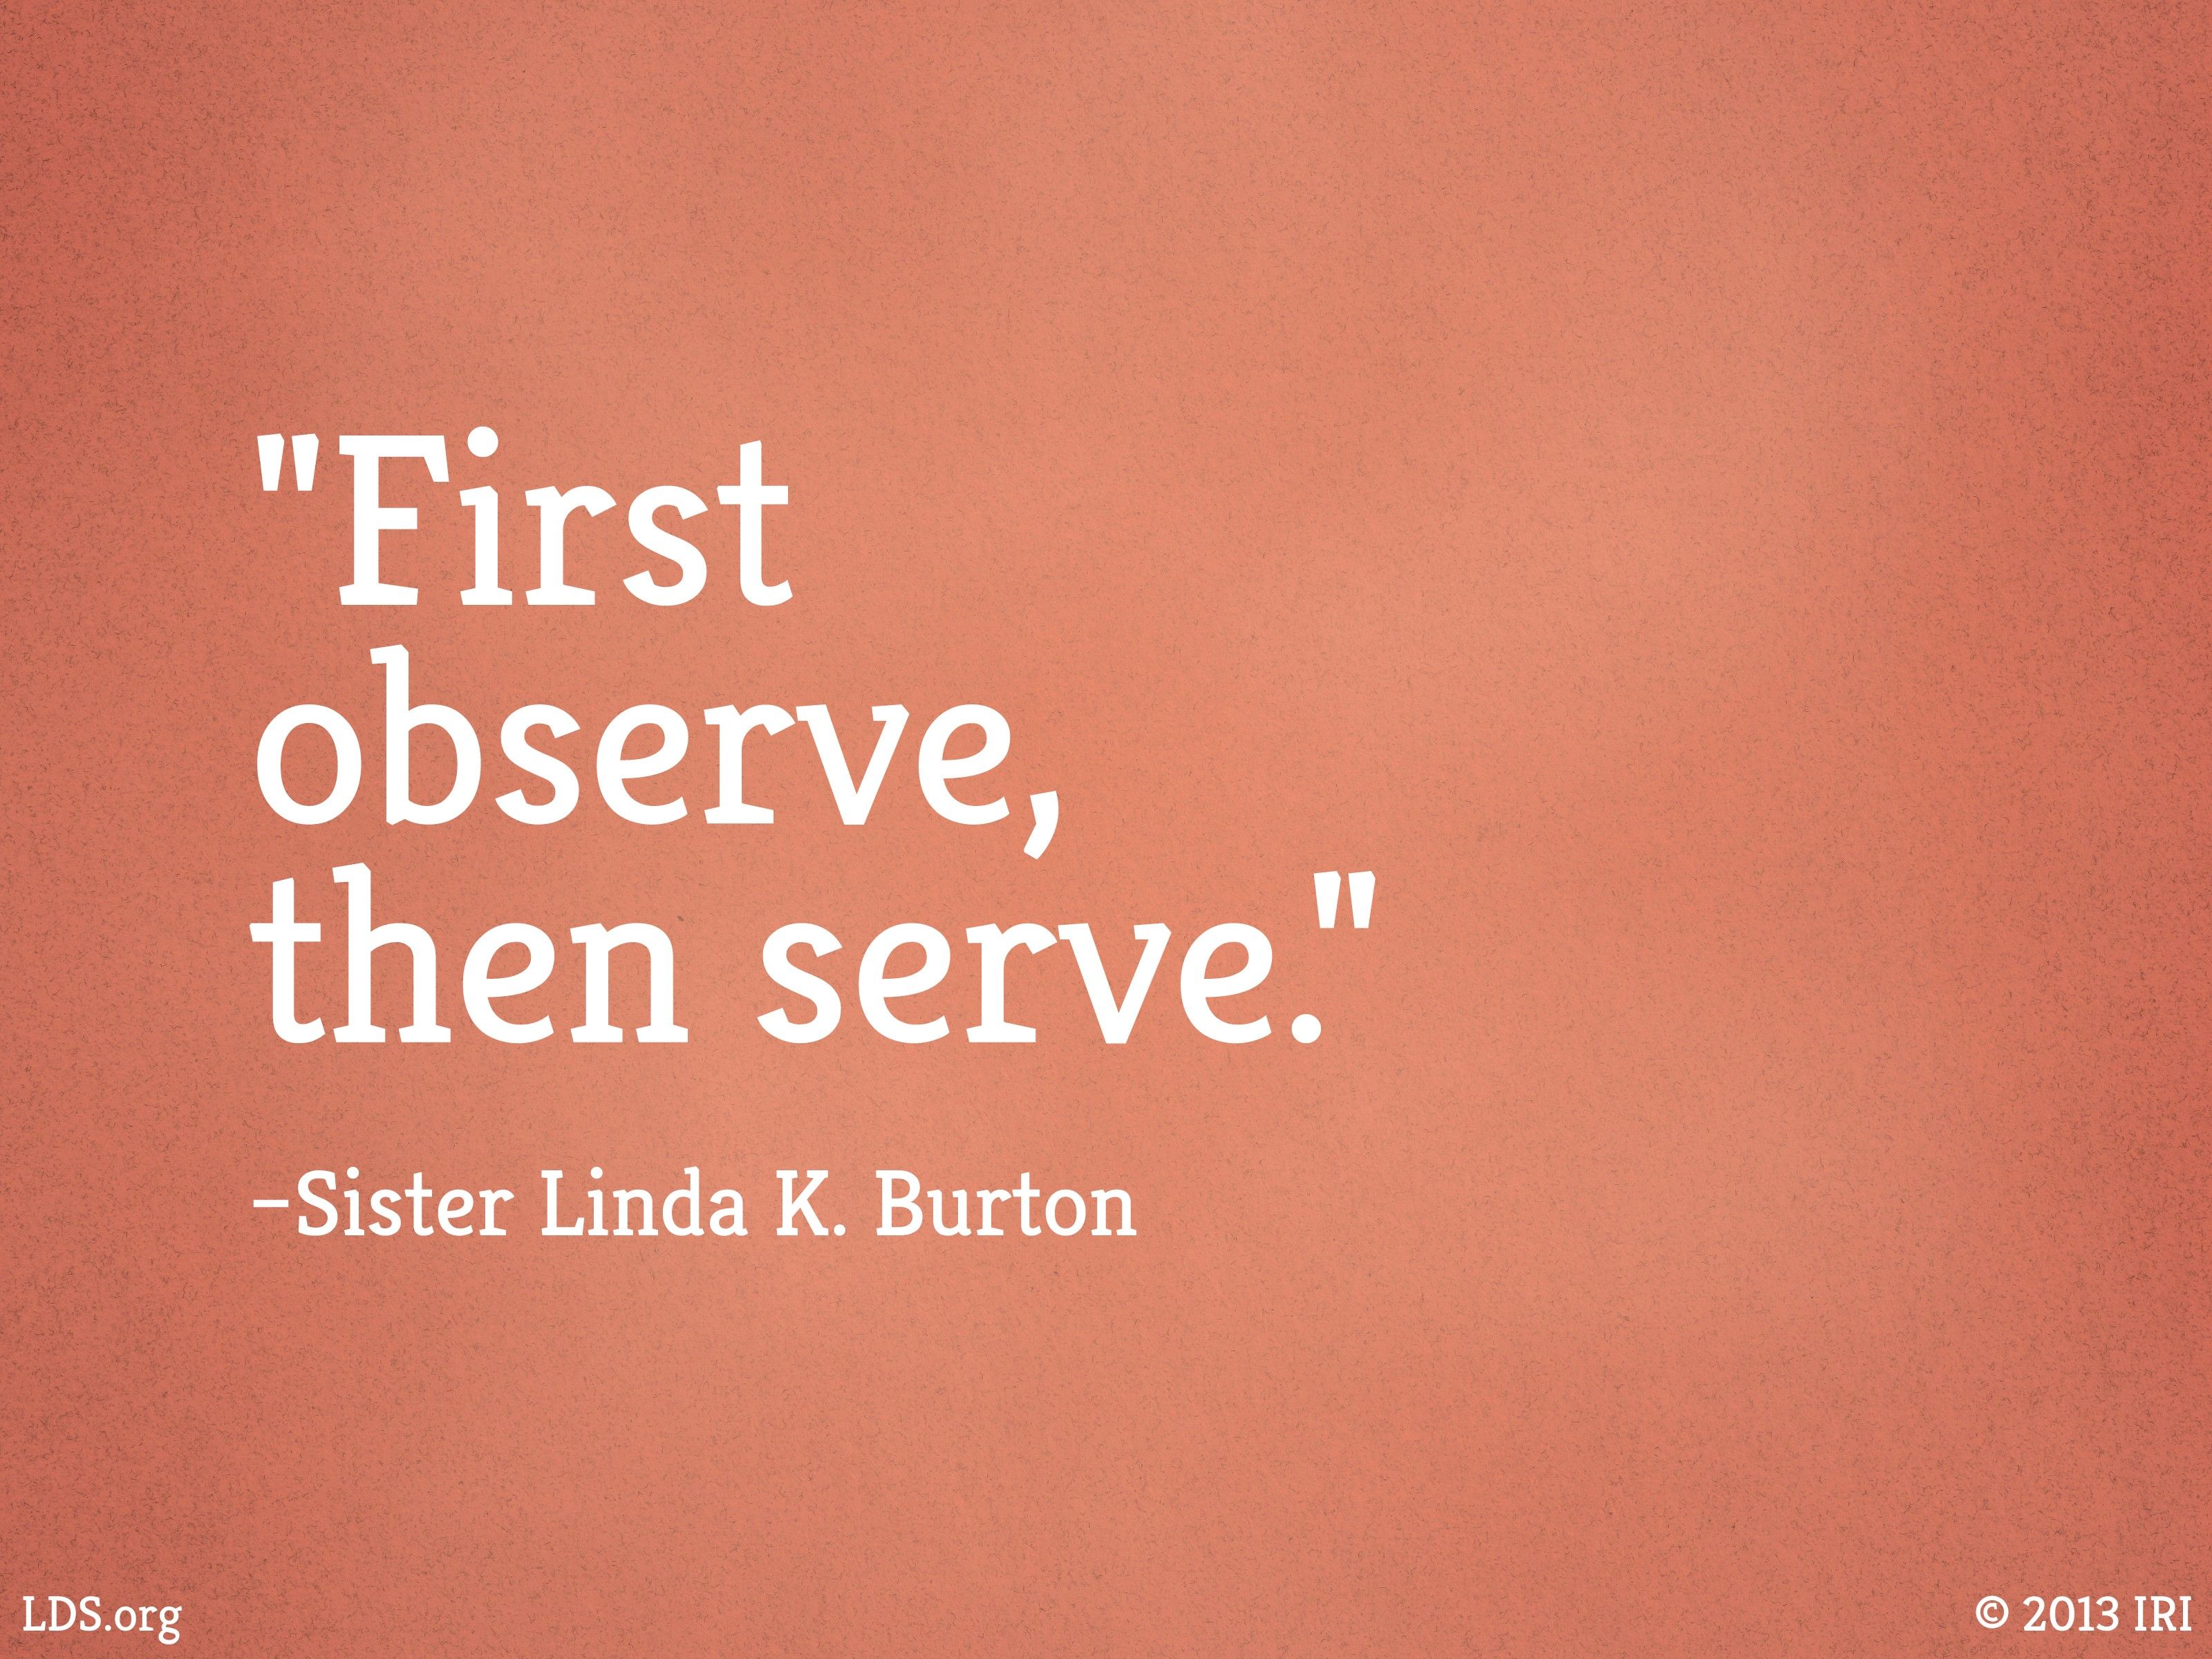 “First observe, then serve.”—Sister Linda K. Burton, “First Observe, Then Serve” © undefined ipCode 1.